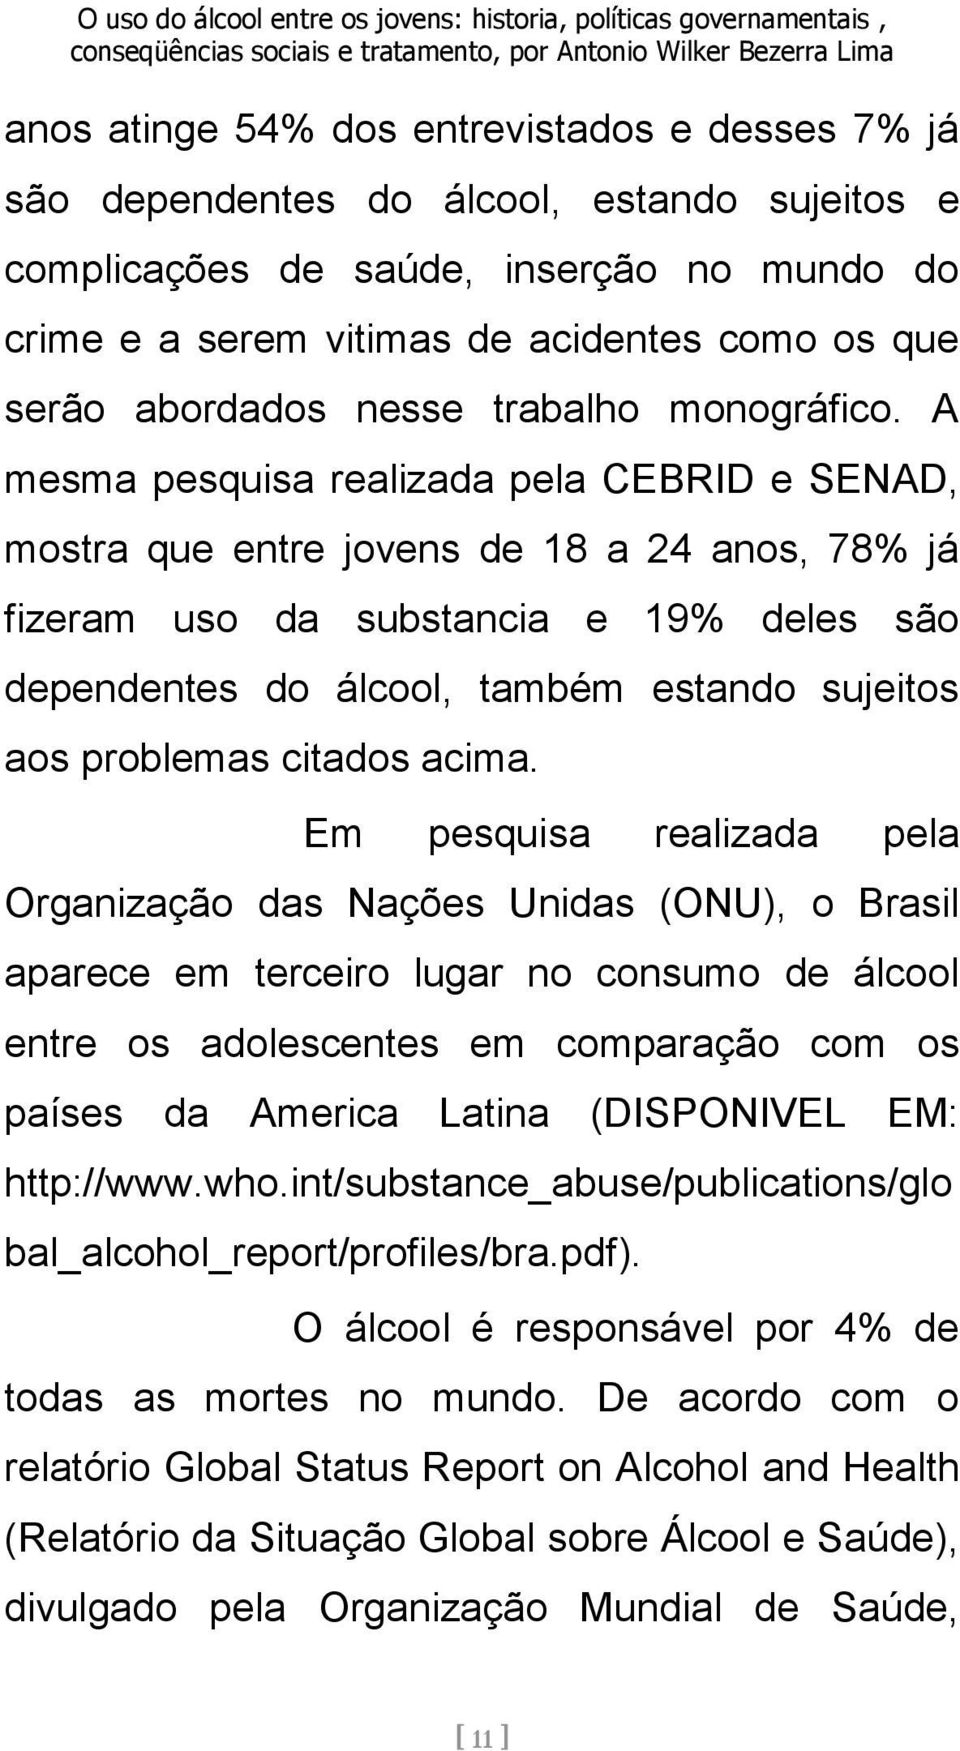 A mesma pesquisa realizada pela CEBRID e SENAD, mostra que entre jovens de 18 a 24 anos, 78% já fizeram uso da substancia e 19% deles são dependentes do álcool, também estando sujeitos aos problemas